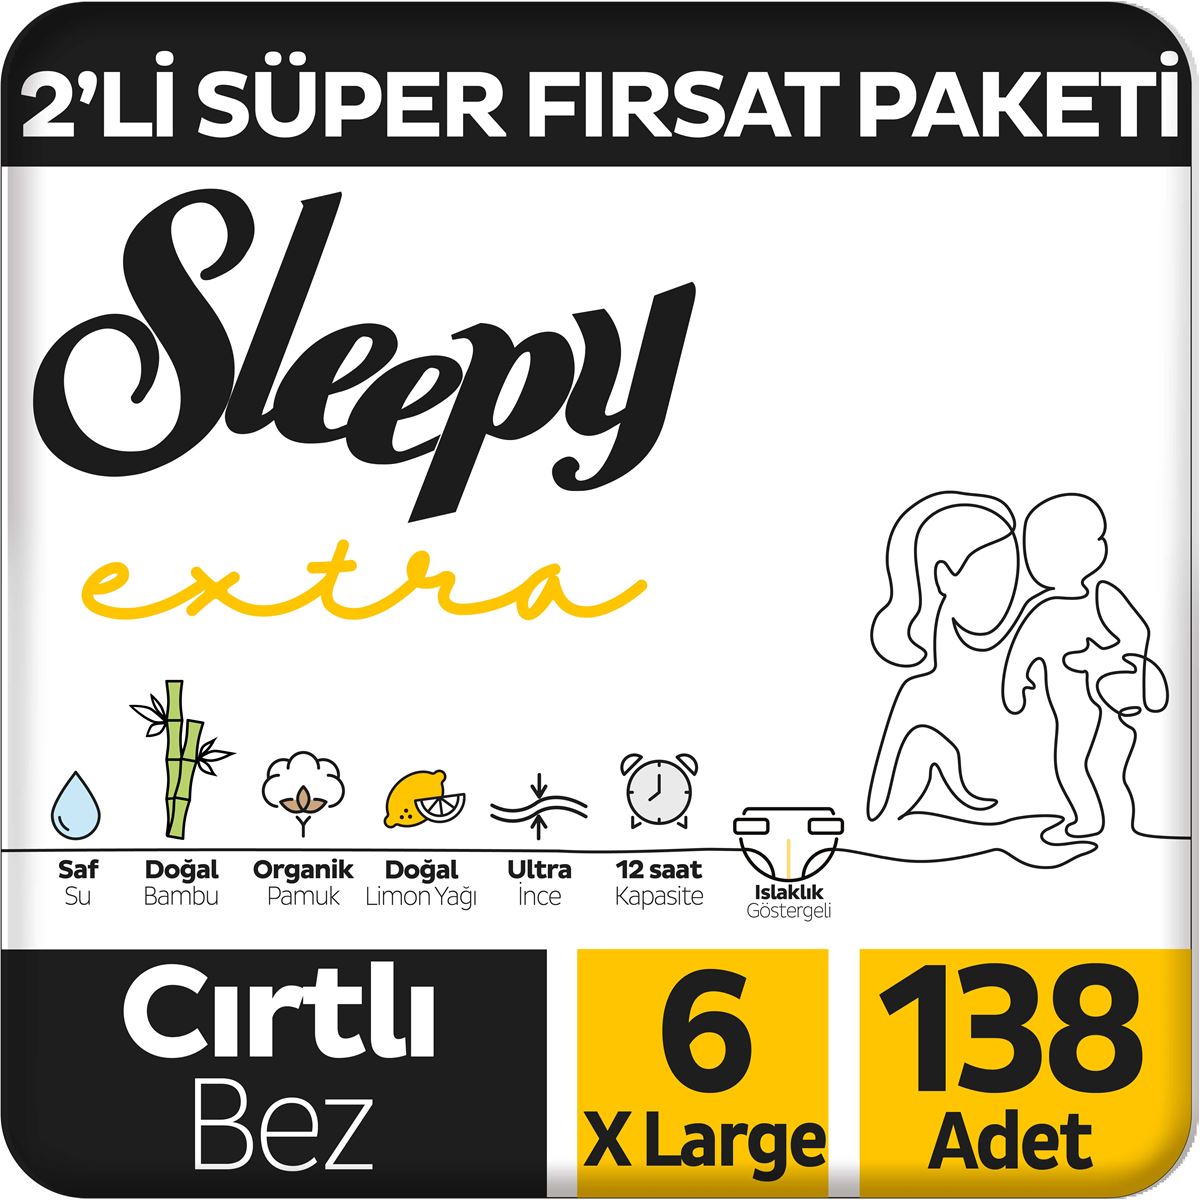 Sleepy Extra Günlük Aktivite 2'li Süper Fırsat Paketi Bebek Bezi 6 Numara Xlarge 138 Adet